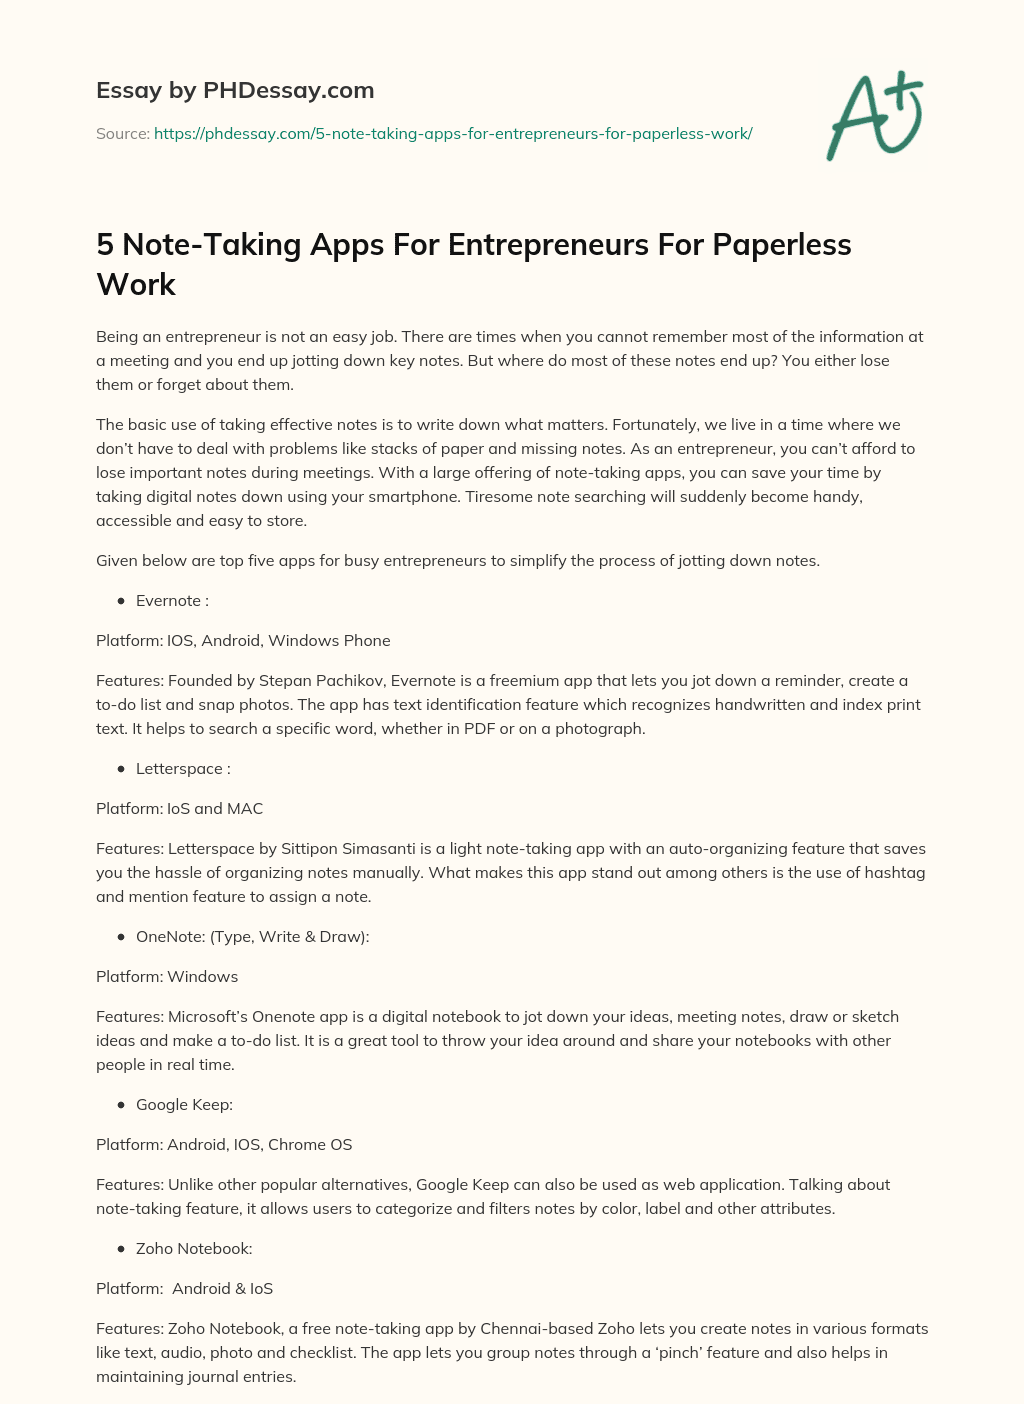 5 Note-Taking Apps For Entrepreneurs For Paperless Work essay